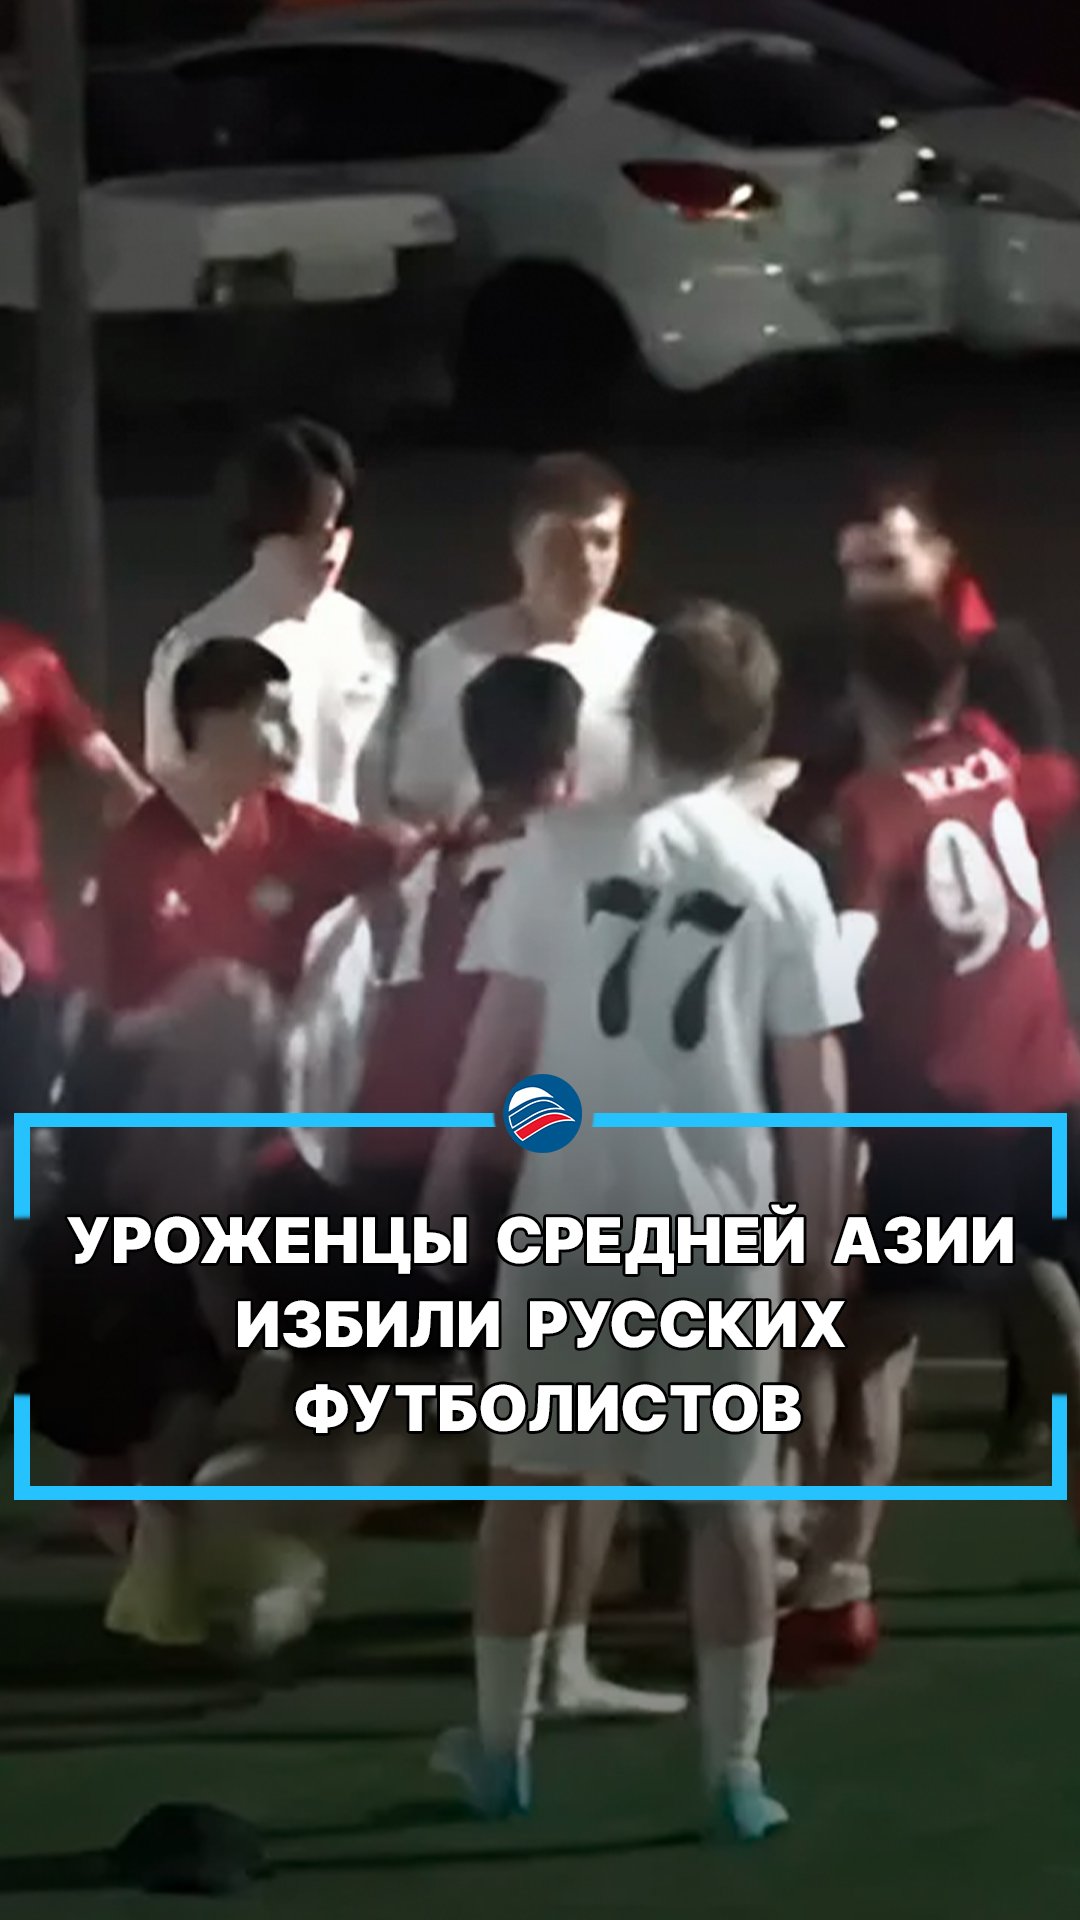 Уроженцы Средней Азии избили русских футболистов #shorts